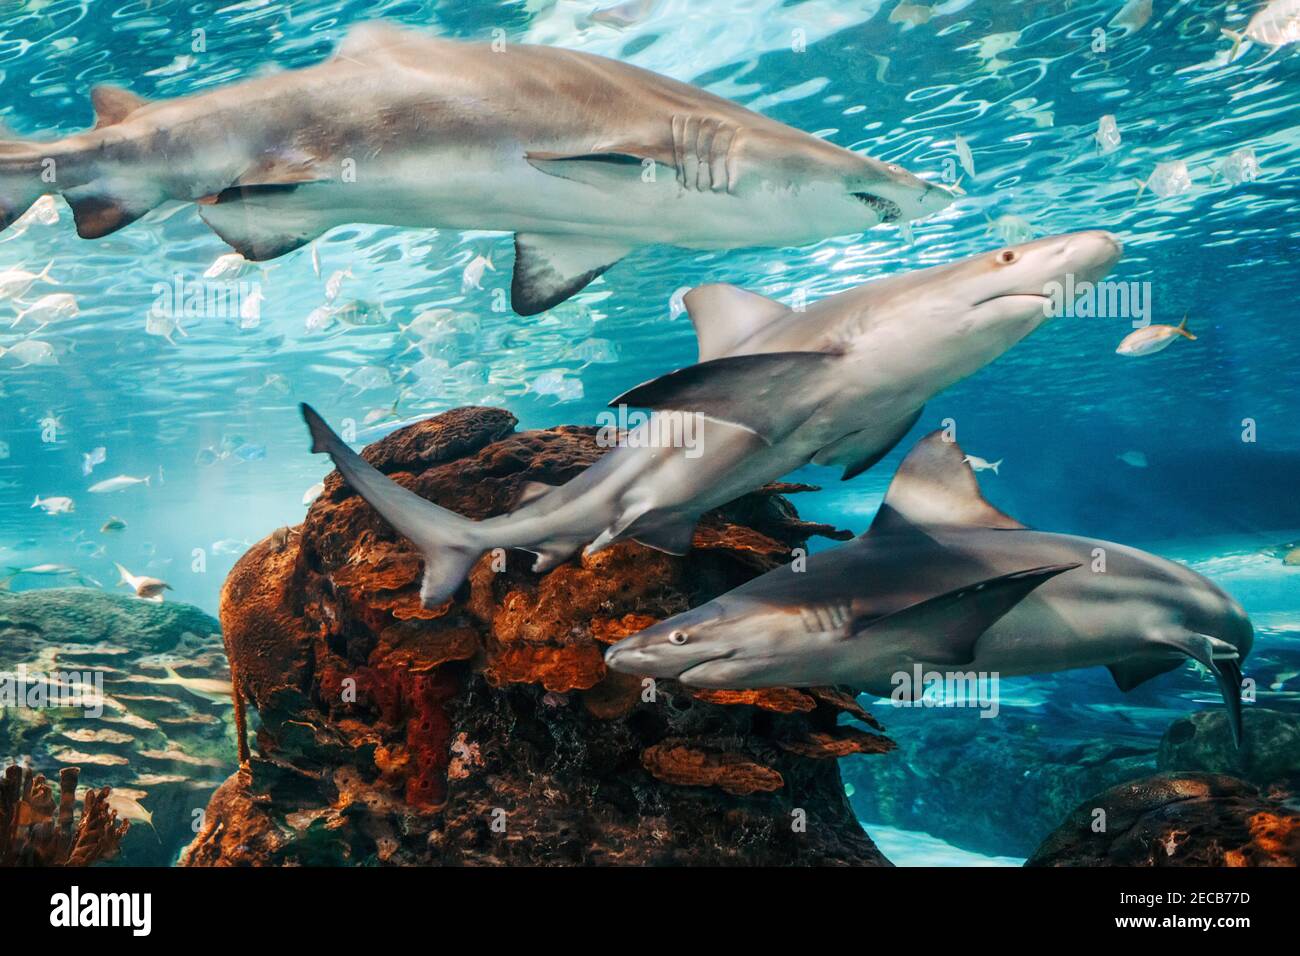 Riesige beängstigende Haie unter Wasser im Aquarium. Meer Meer marine Tierwelt Raubtiere gefährliche Tiere schwimmen in blauem Wasser. Unterwasserwelt. Stockfoto